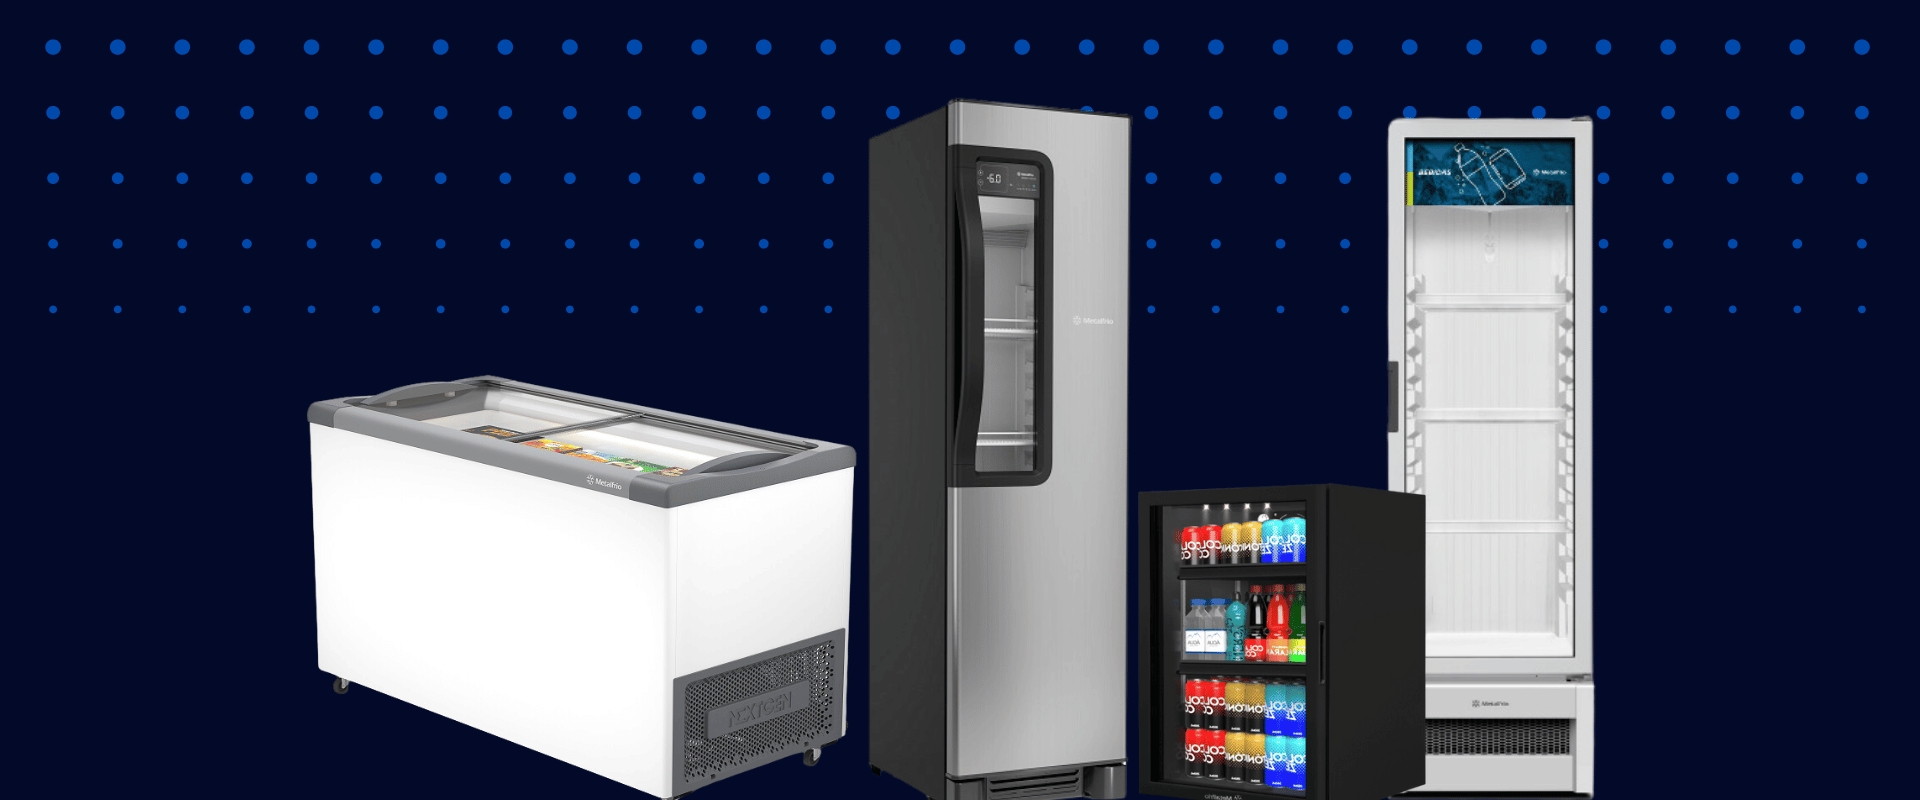 <b><b>Refrigeradores e Freezer MetalFrio</b></b>